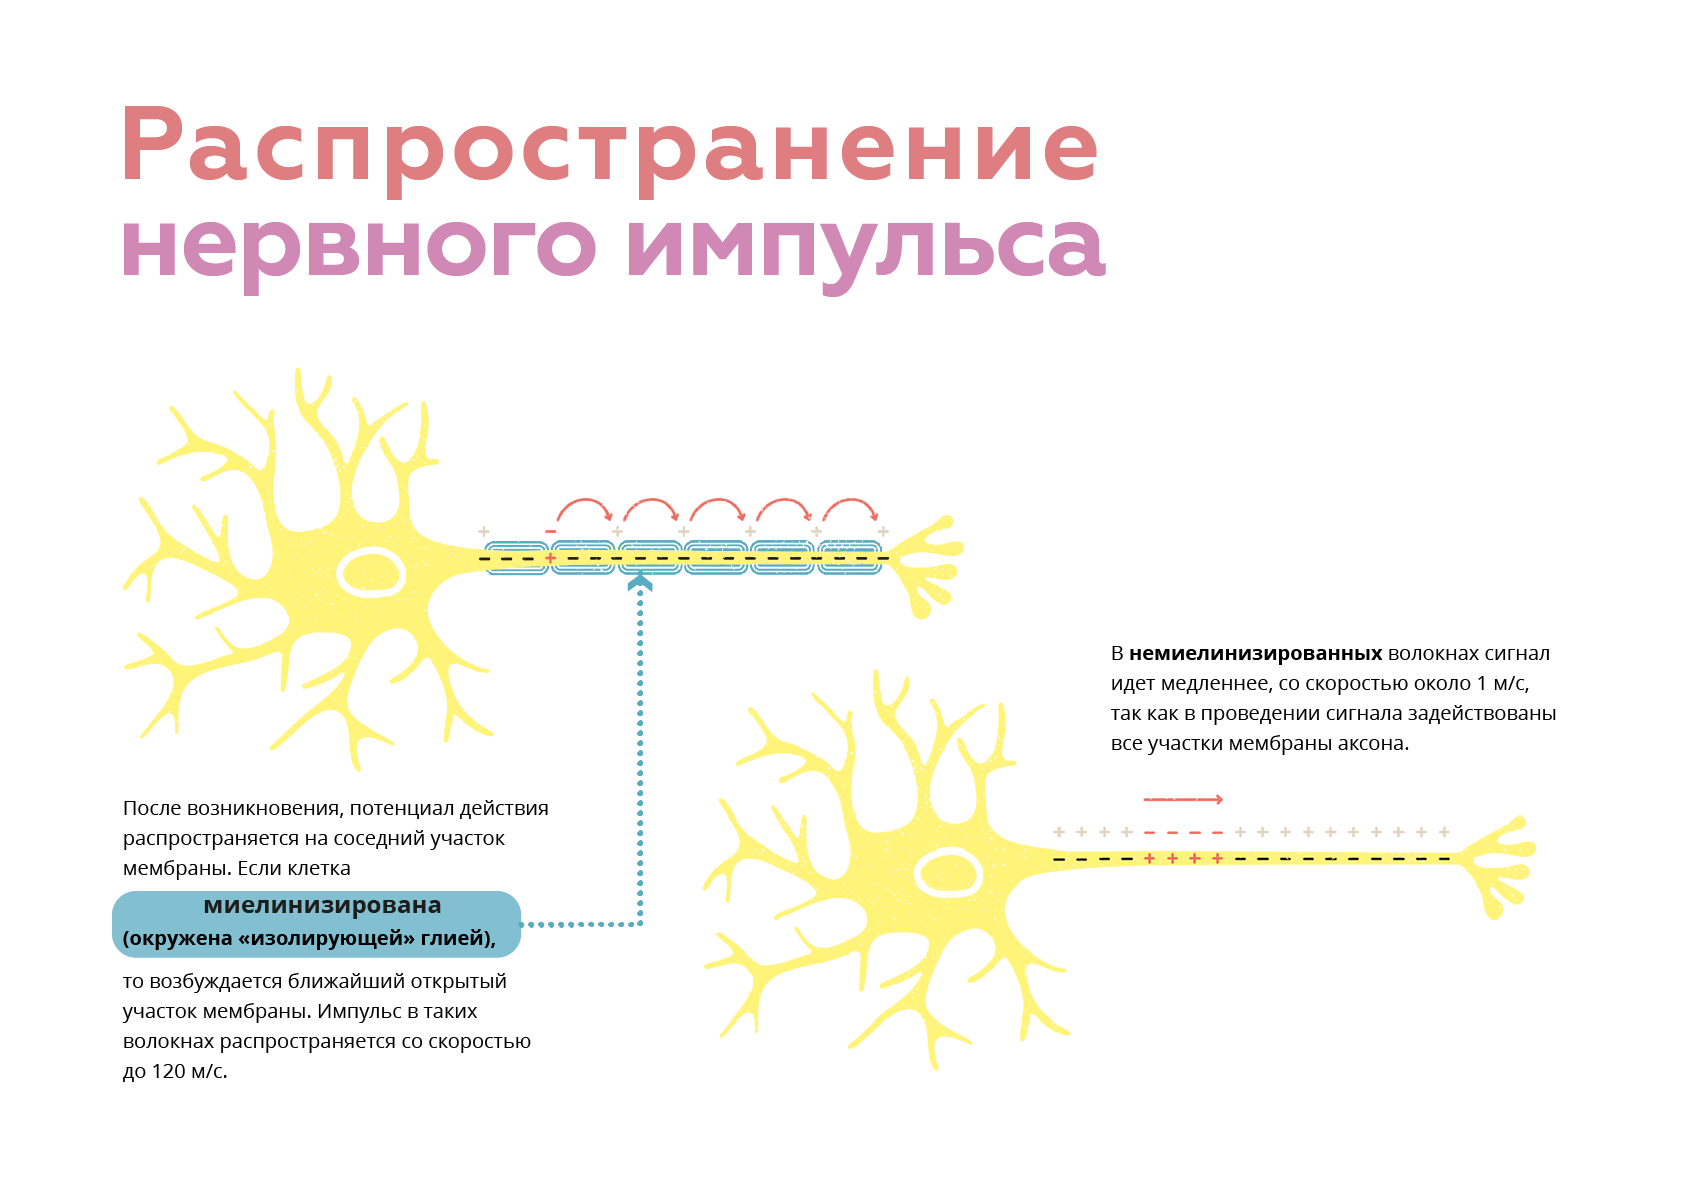 Ткань передающая импульс. Схема передачи импульса нейрона. Проведение и передача нервного импульса. Схема проведения нервного импульса. Распространение нервного импульса.